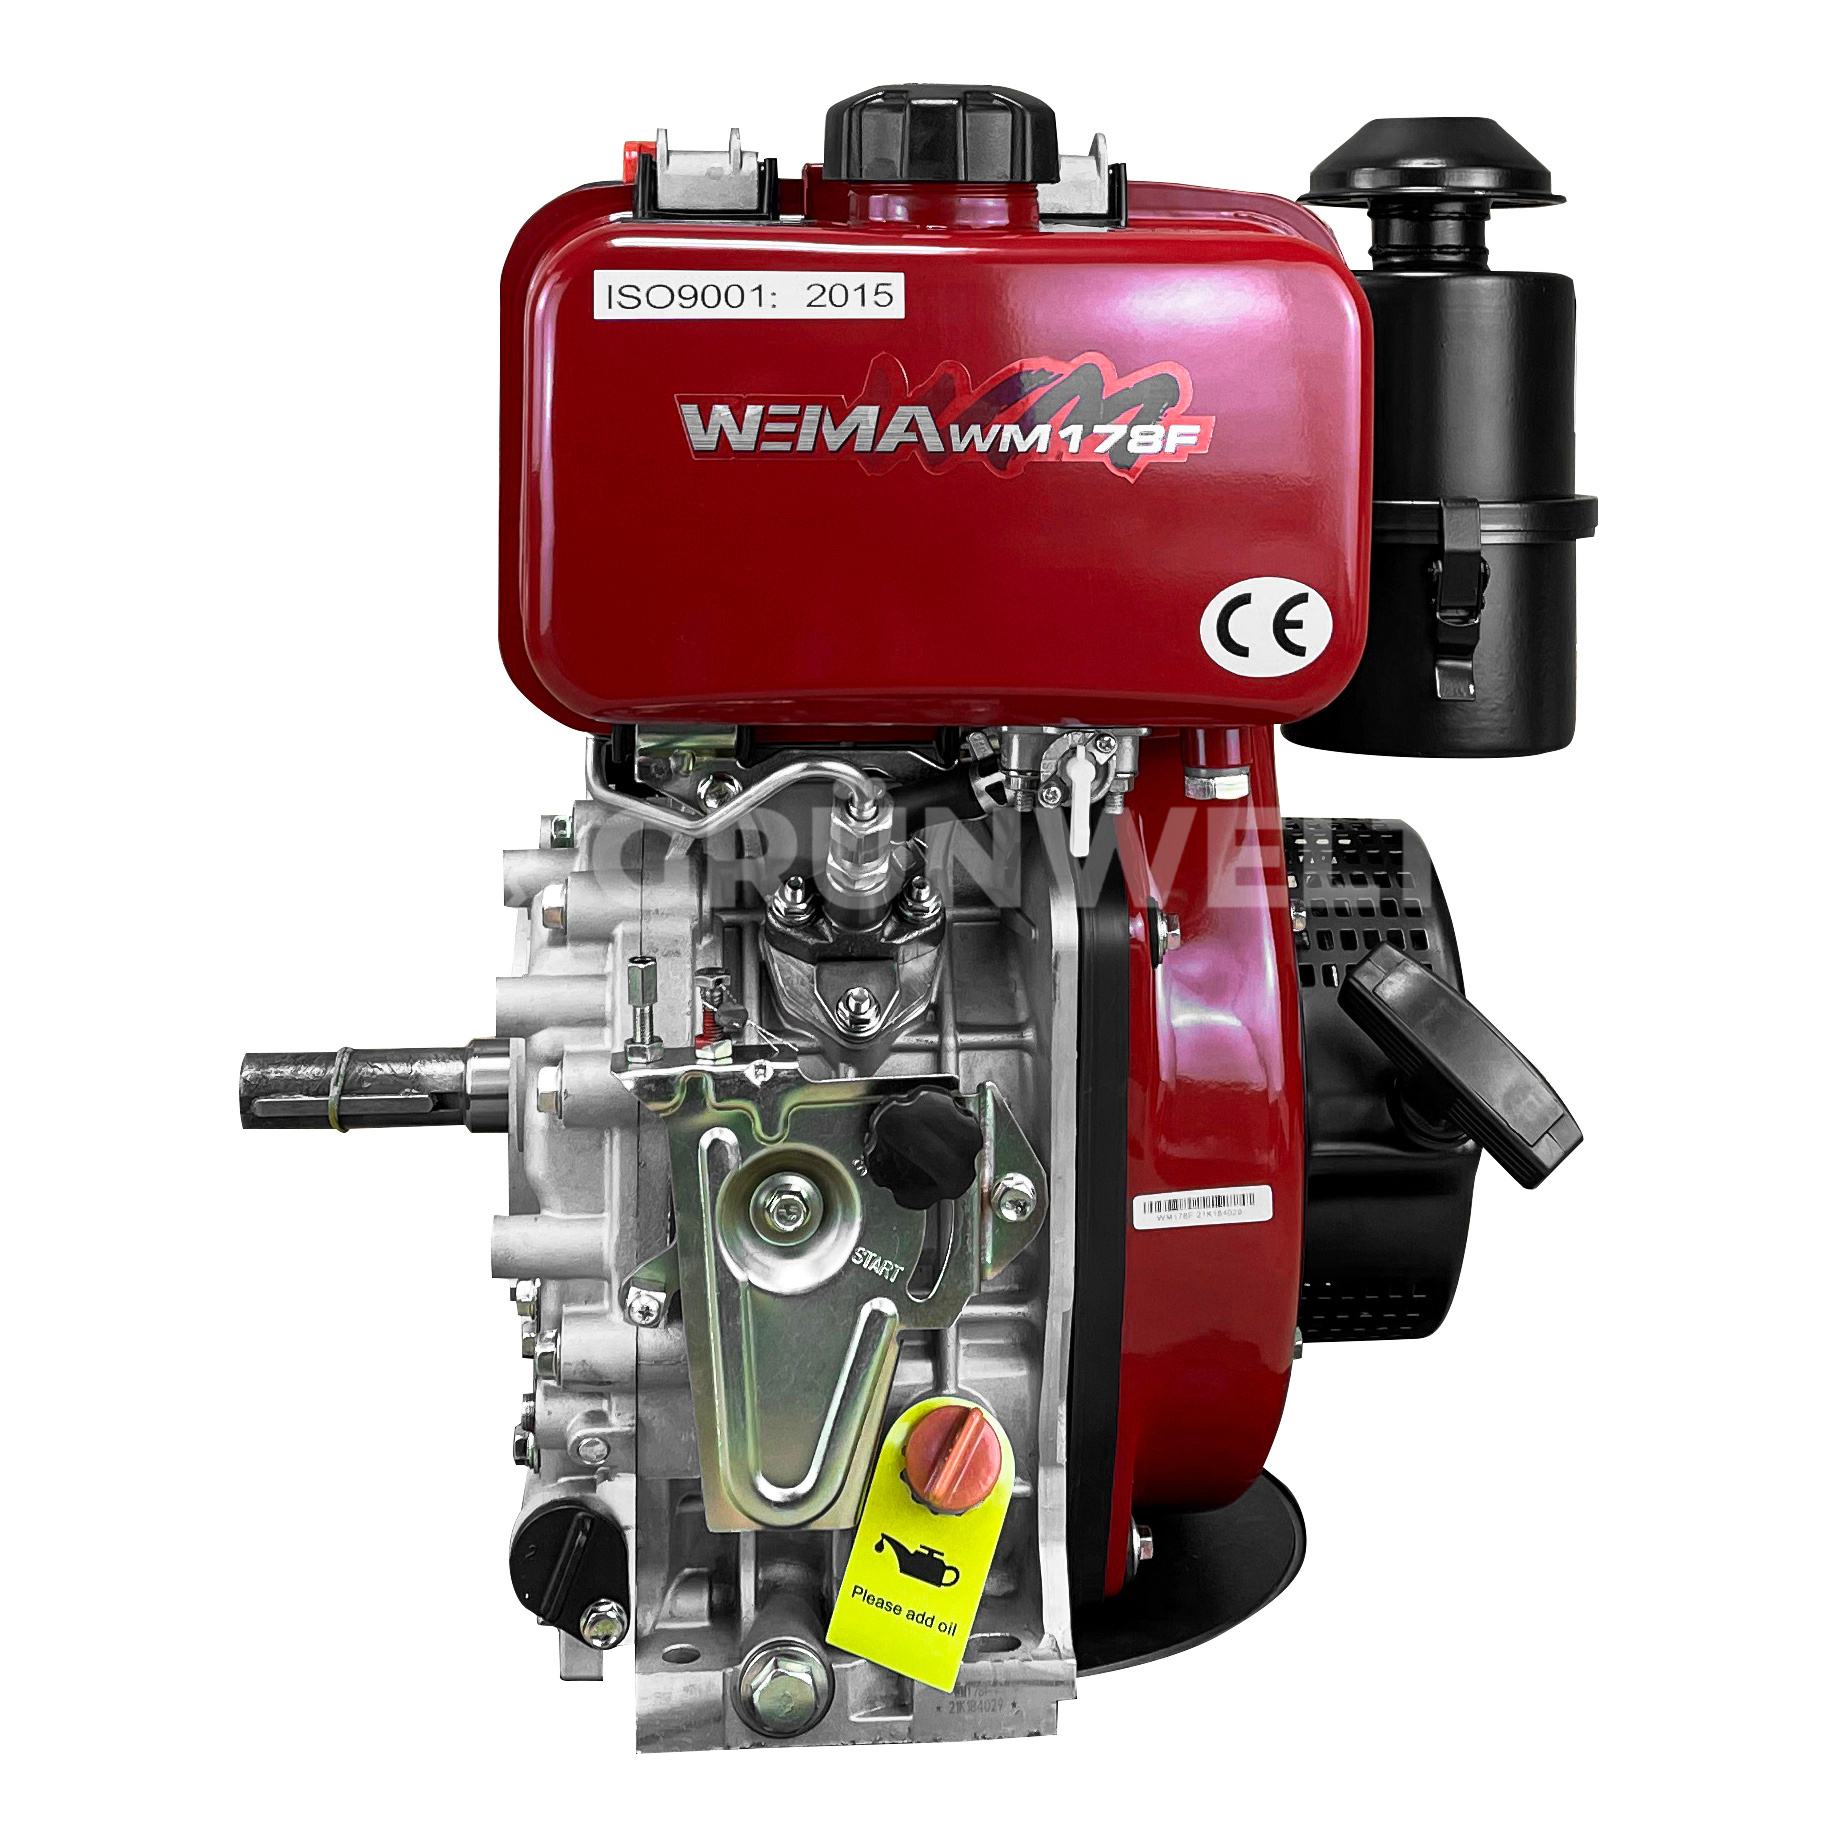 Dieselmotor Weima WM178F mit Ölbadluftfilter - Gruenwelt Shop